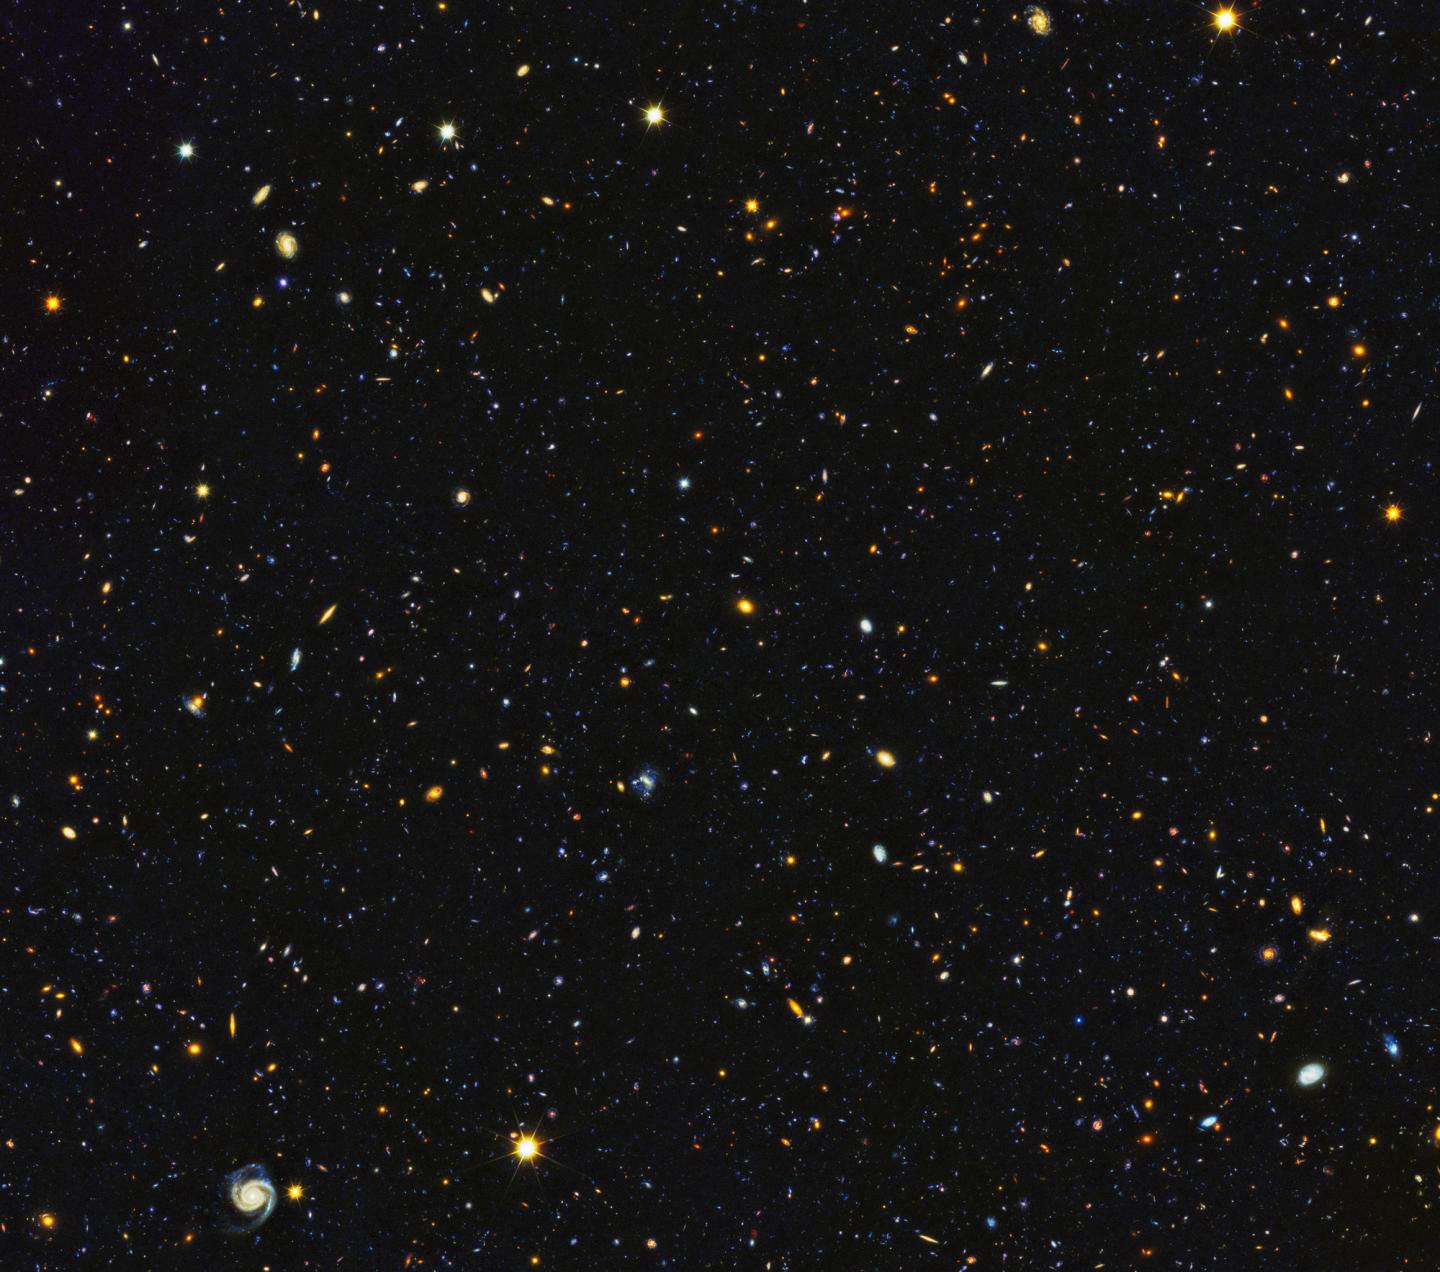 Hubble's Ultraviolet Deep Field